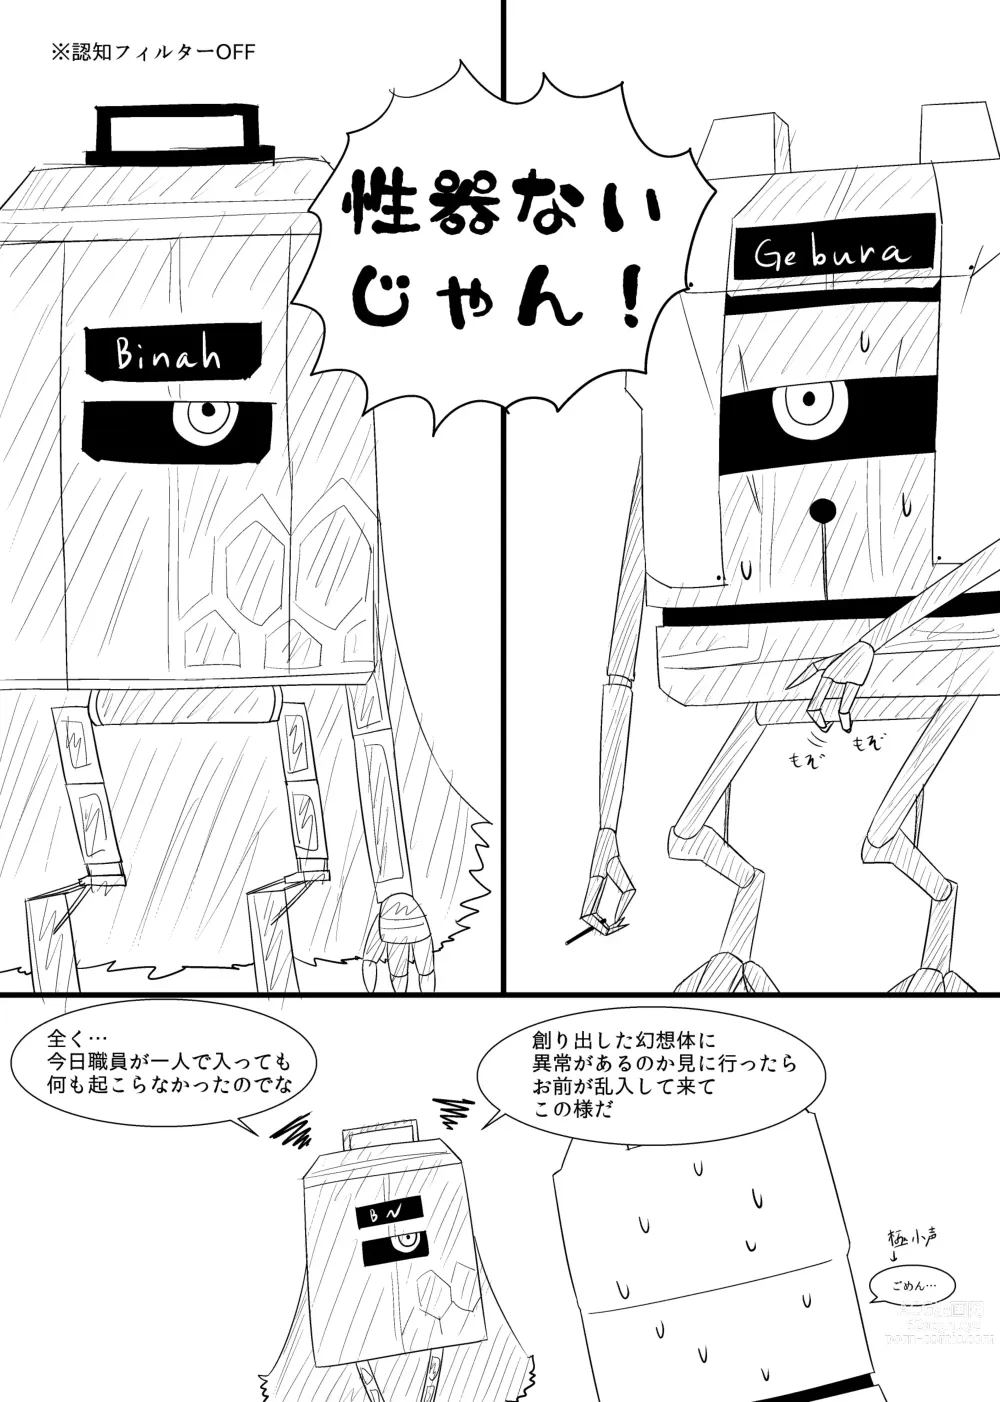 Page 4 of doujinshi Rikuesuto no Manga